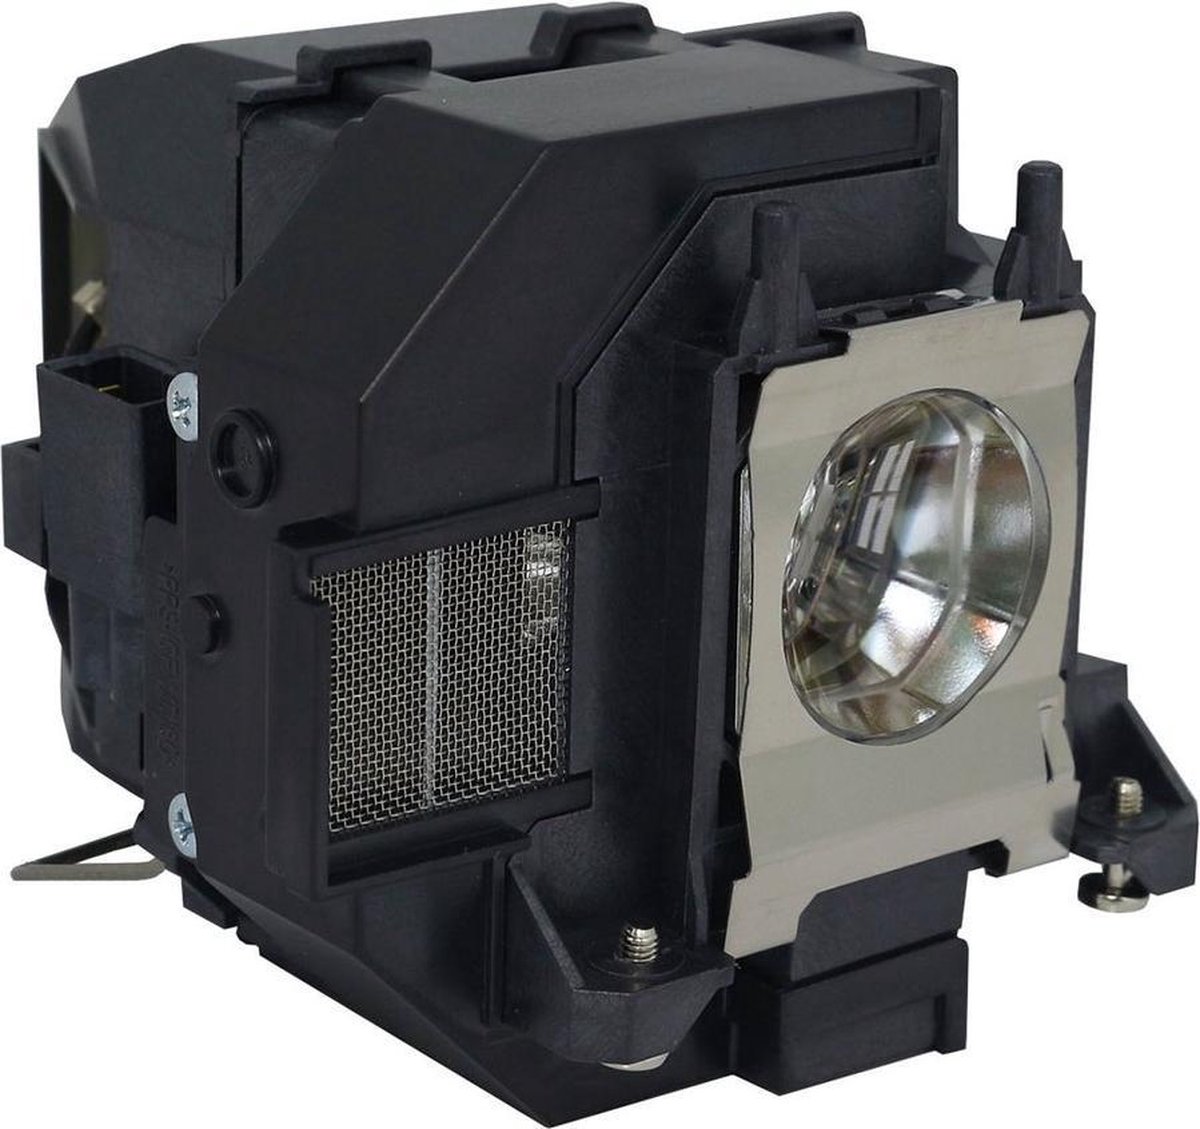 Beamerlamp geschikt voor de EPSON H820B beamer, lamp code LP95 / V13H010L95. Bevat originele NSHA lamp, prestaties gelijk aan origineel.